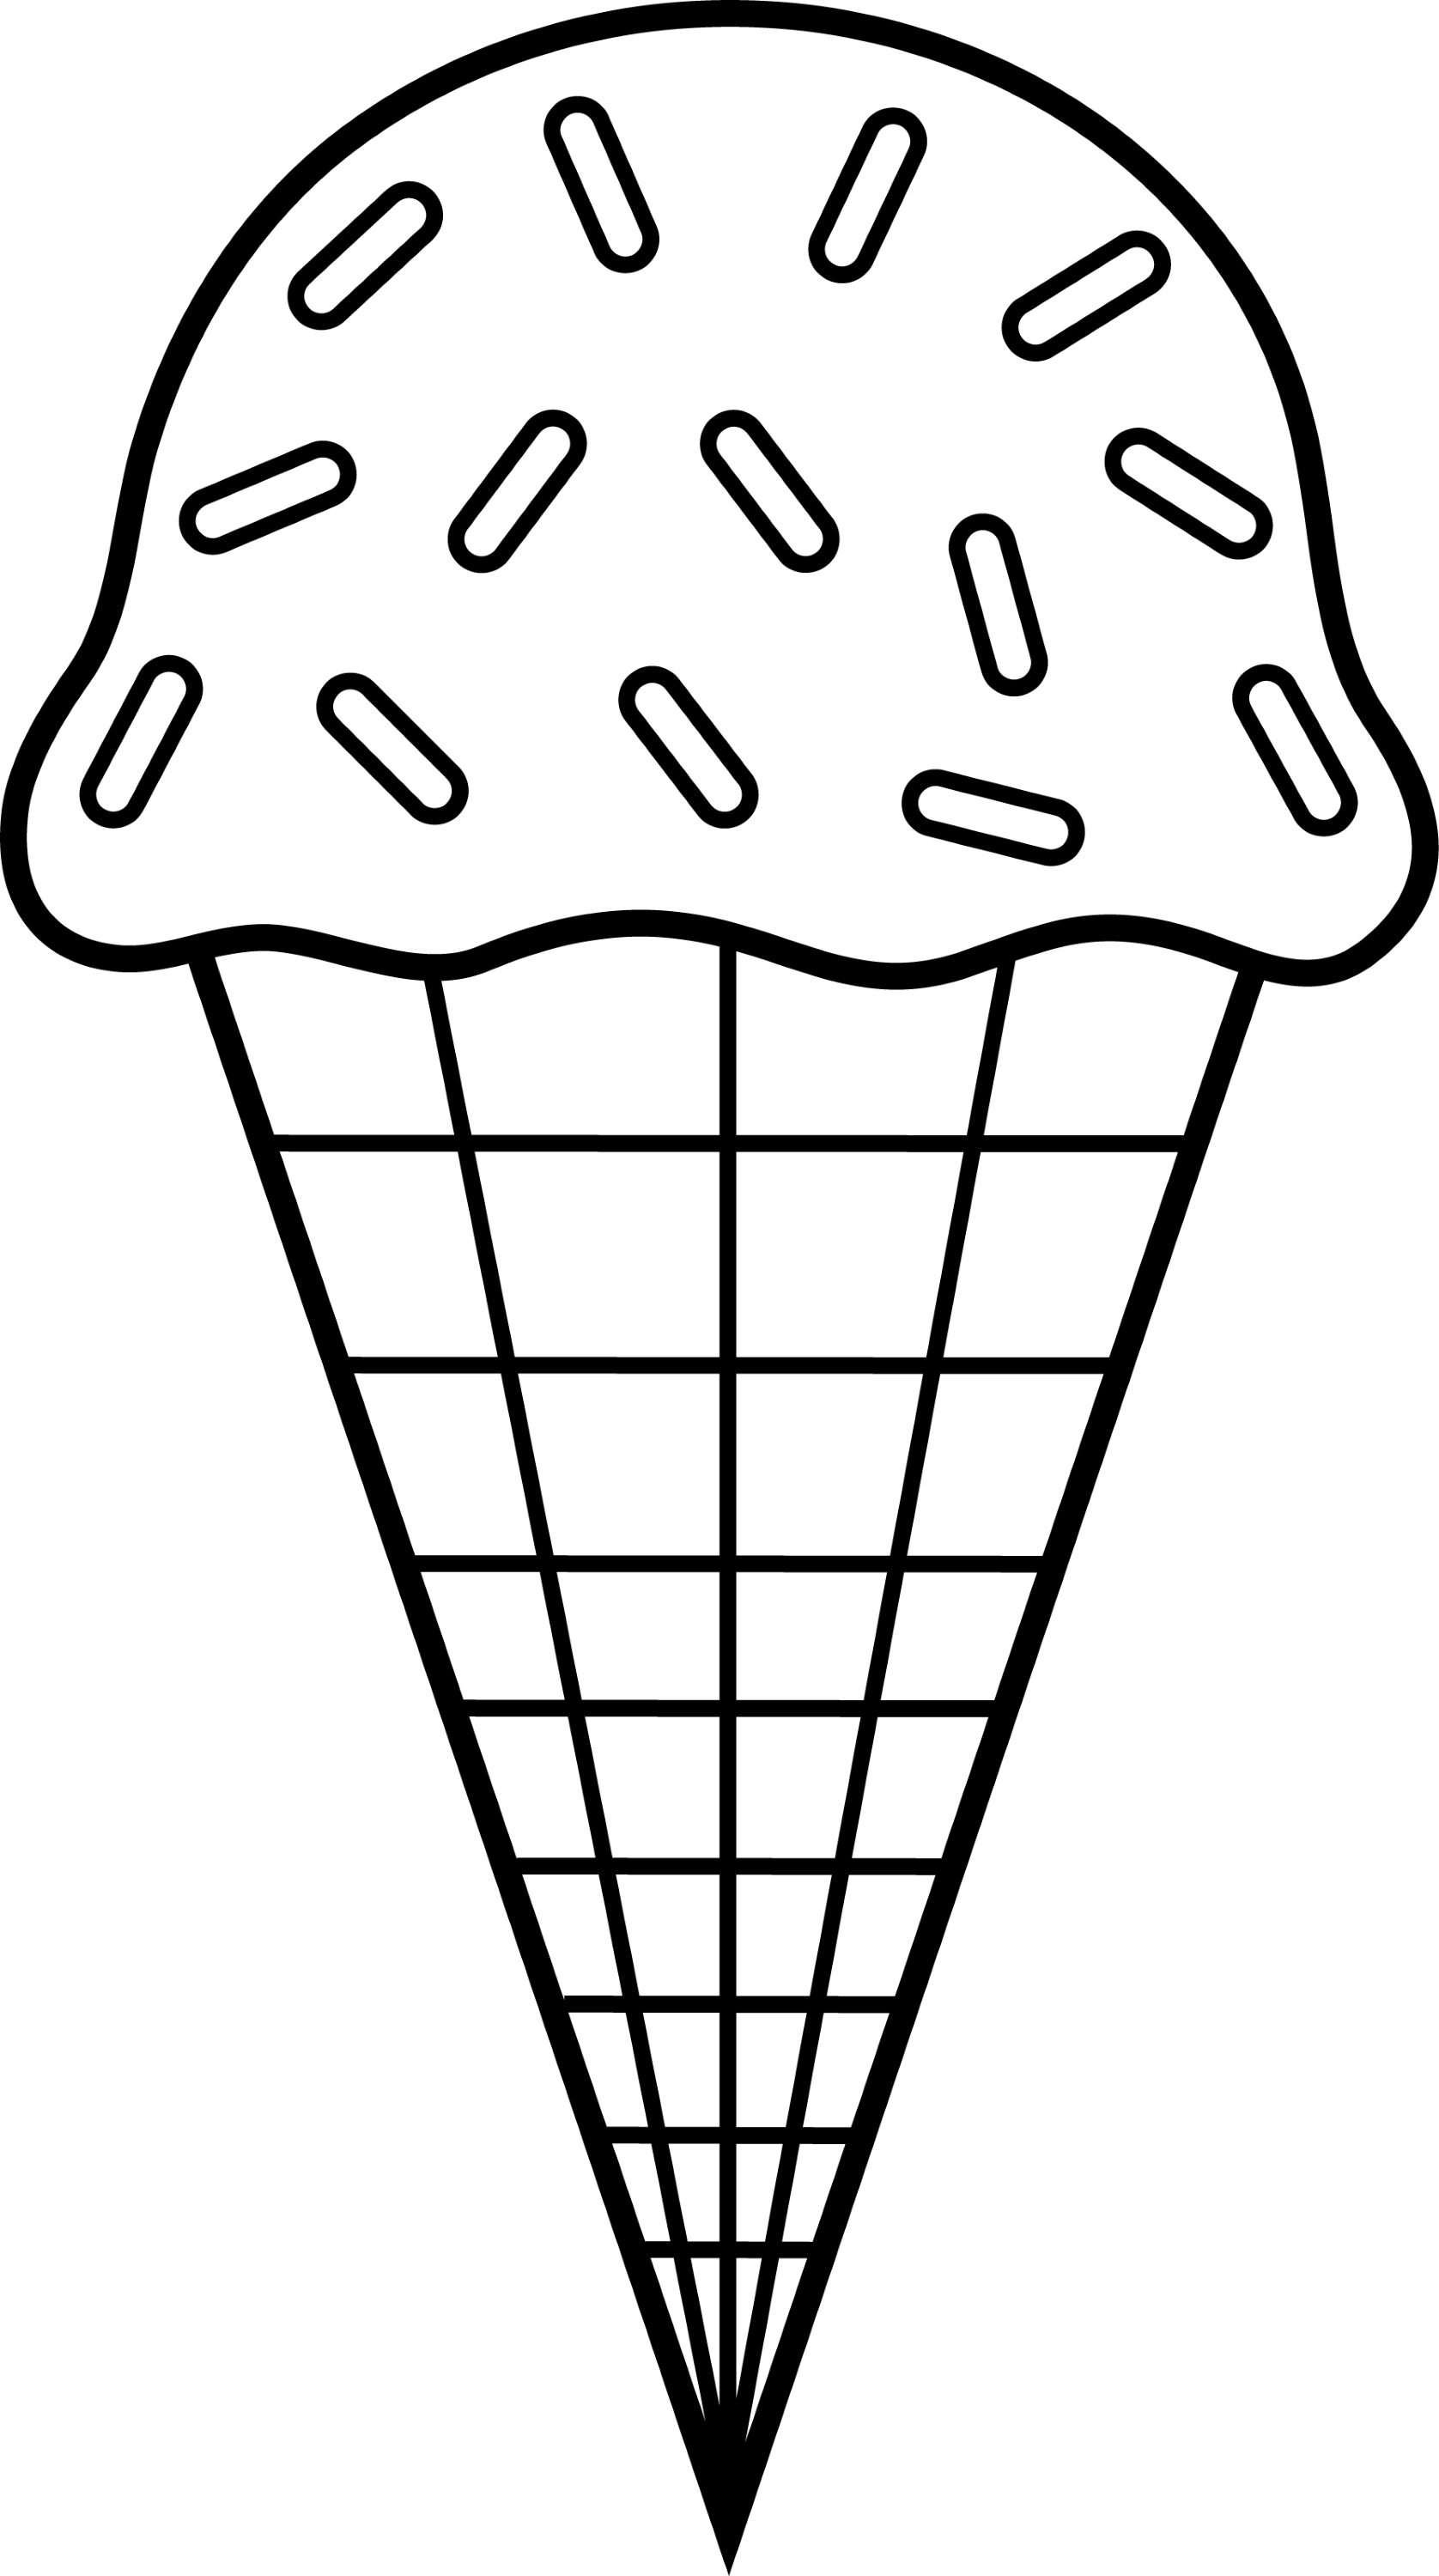 ice cream cone clipart black and white - photo #2